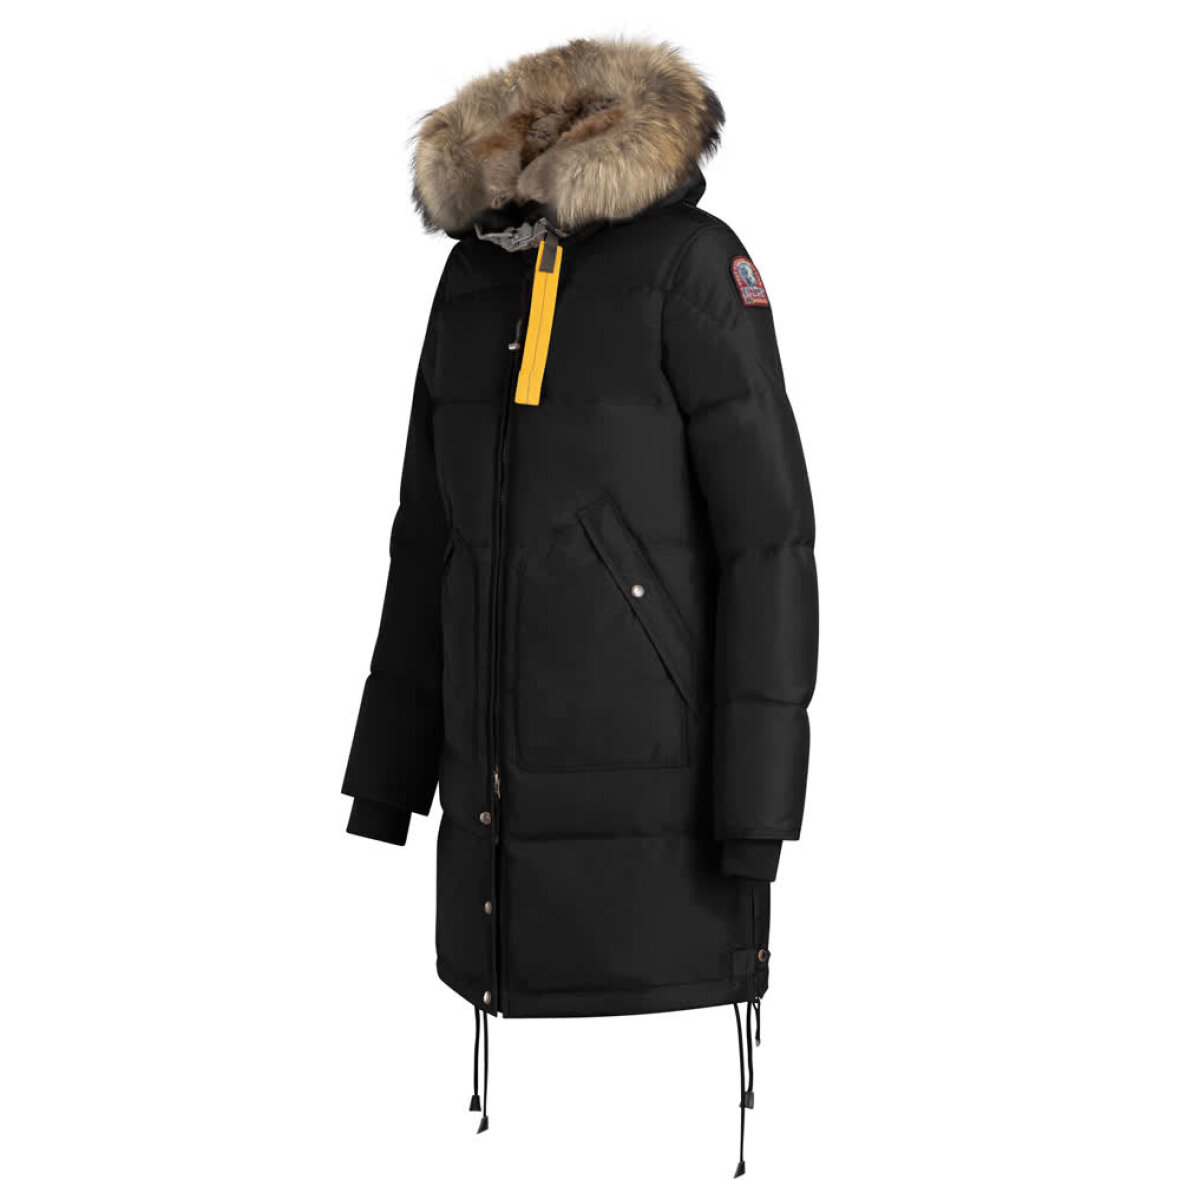 Advent Kro ru Long Bear Master Jacket - Shop din nye Parajumpers jakke her